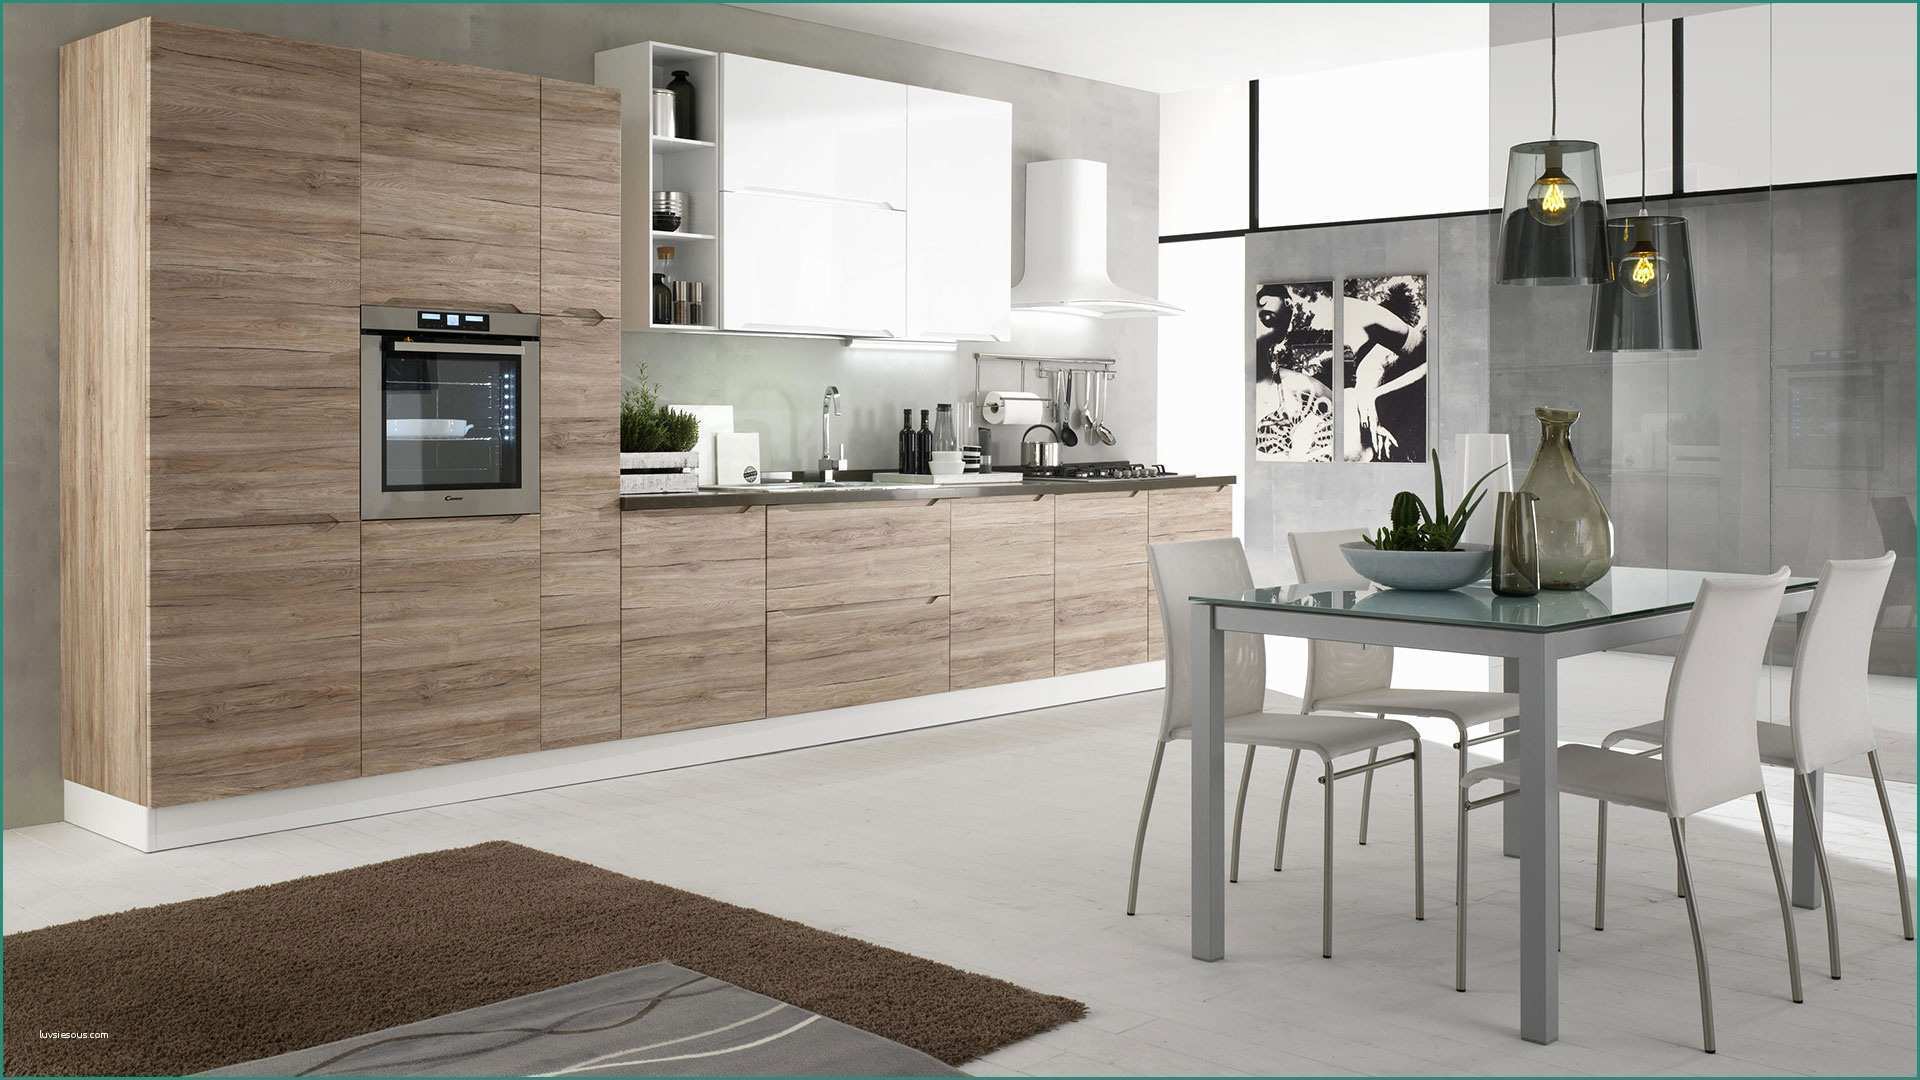 Cucine Classiche Berloni E Immagini Di Cucine Moderne Excellent soggiorno Open Space soggiorno